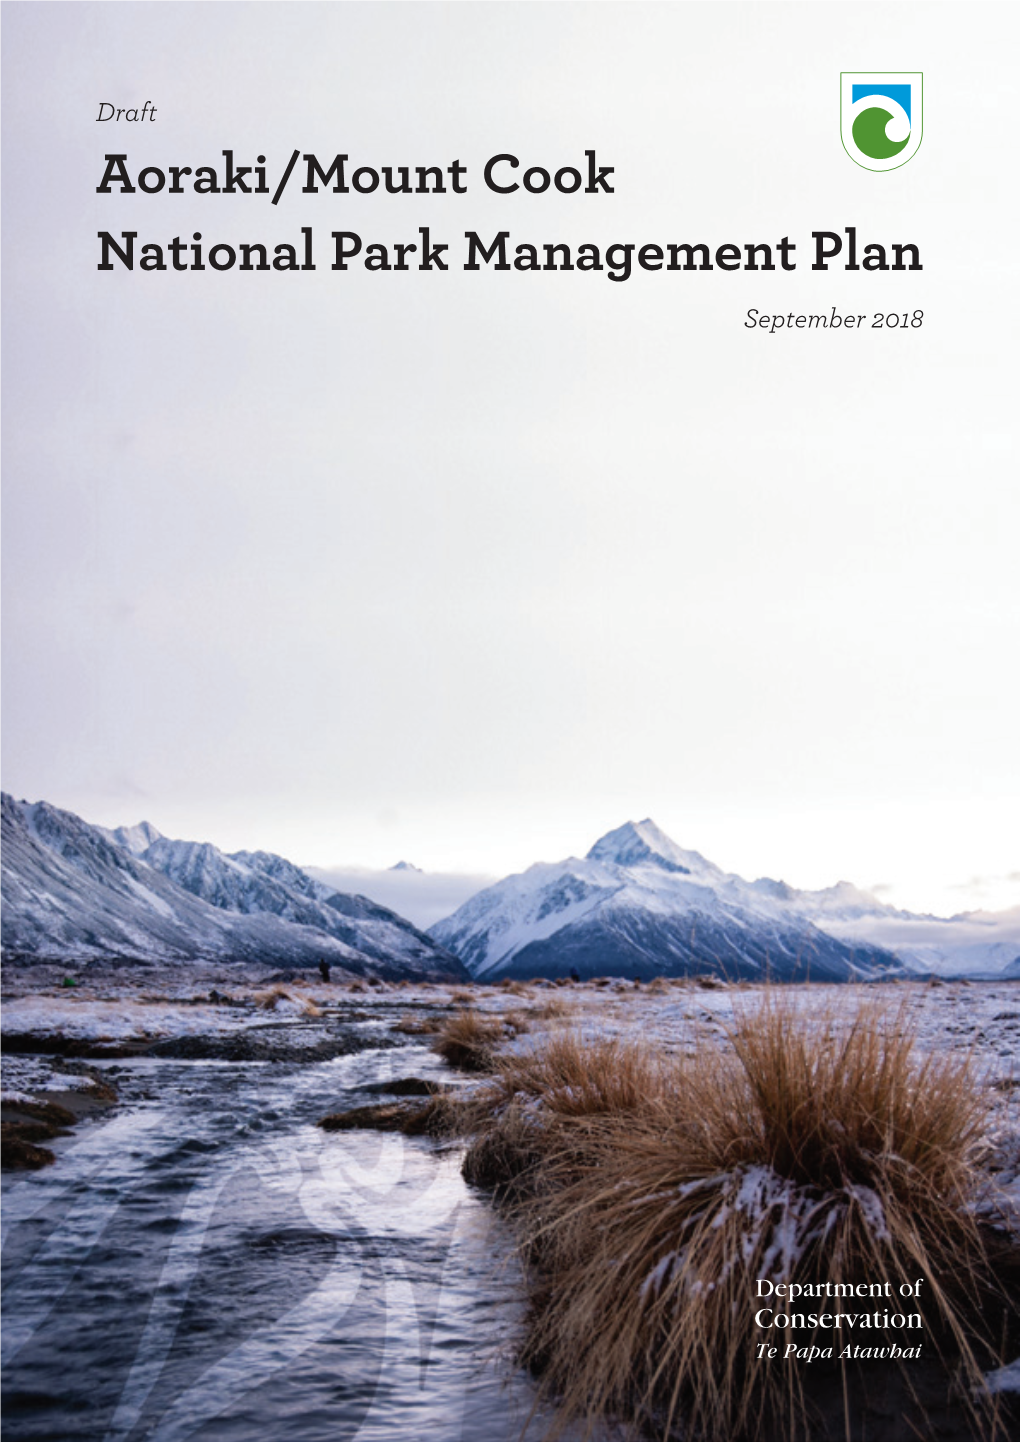 Aoraki/Mount Cook Draft Management Plan